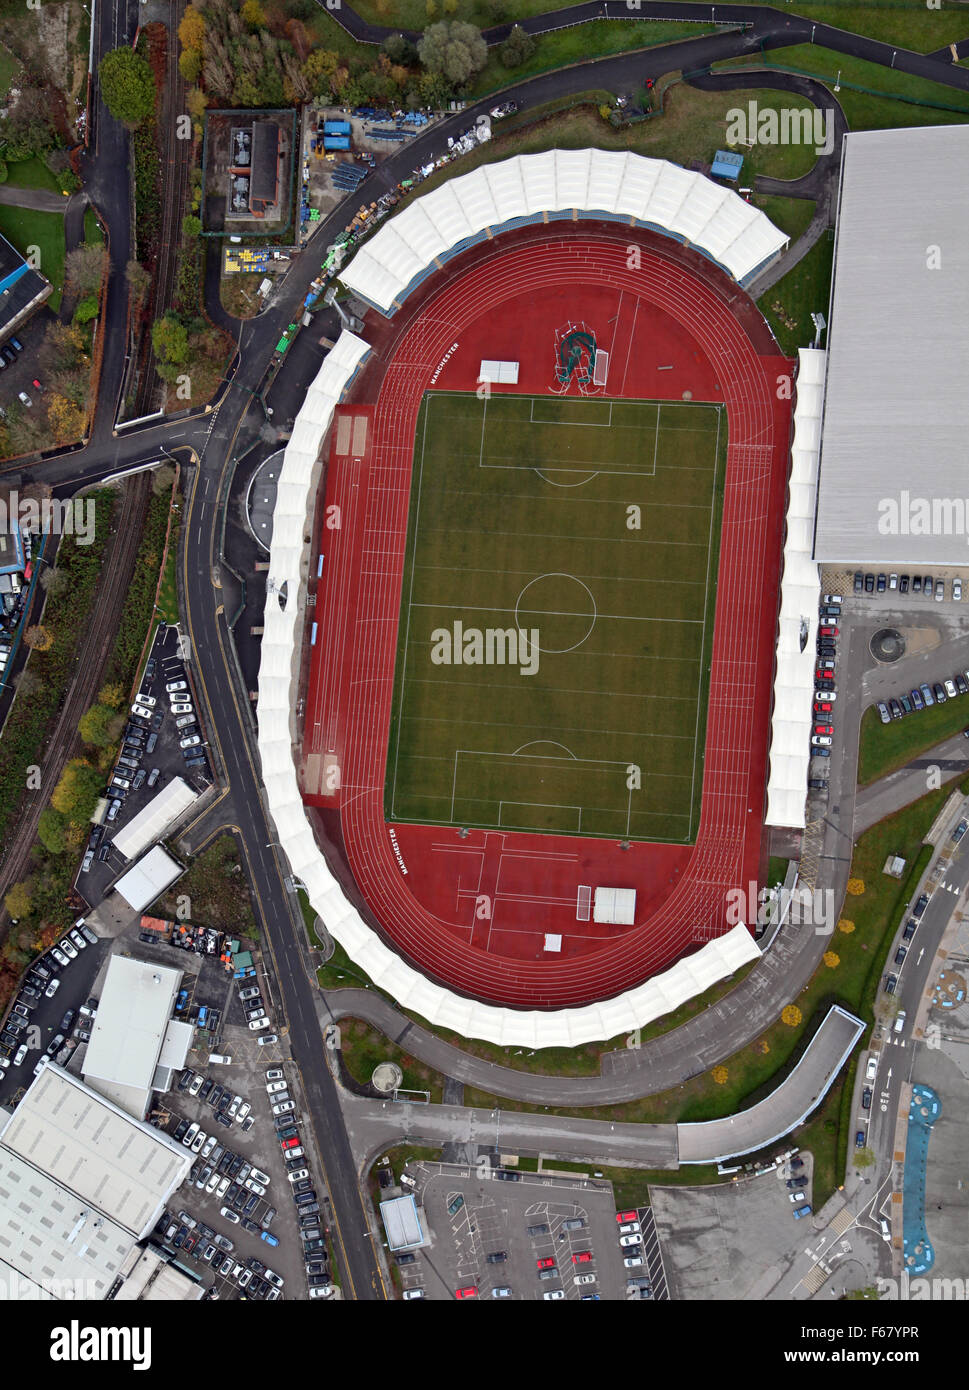 Vue aérienne de la région de Manchester Arena, UK Banque D'Images